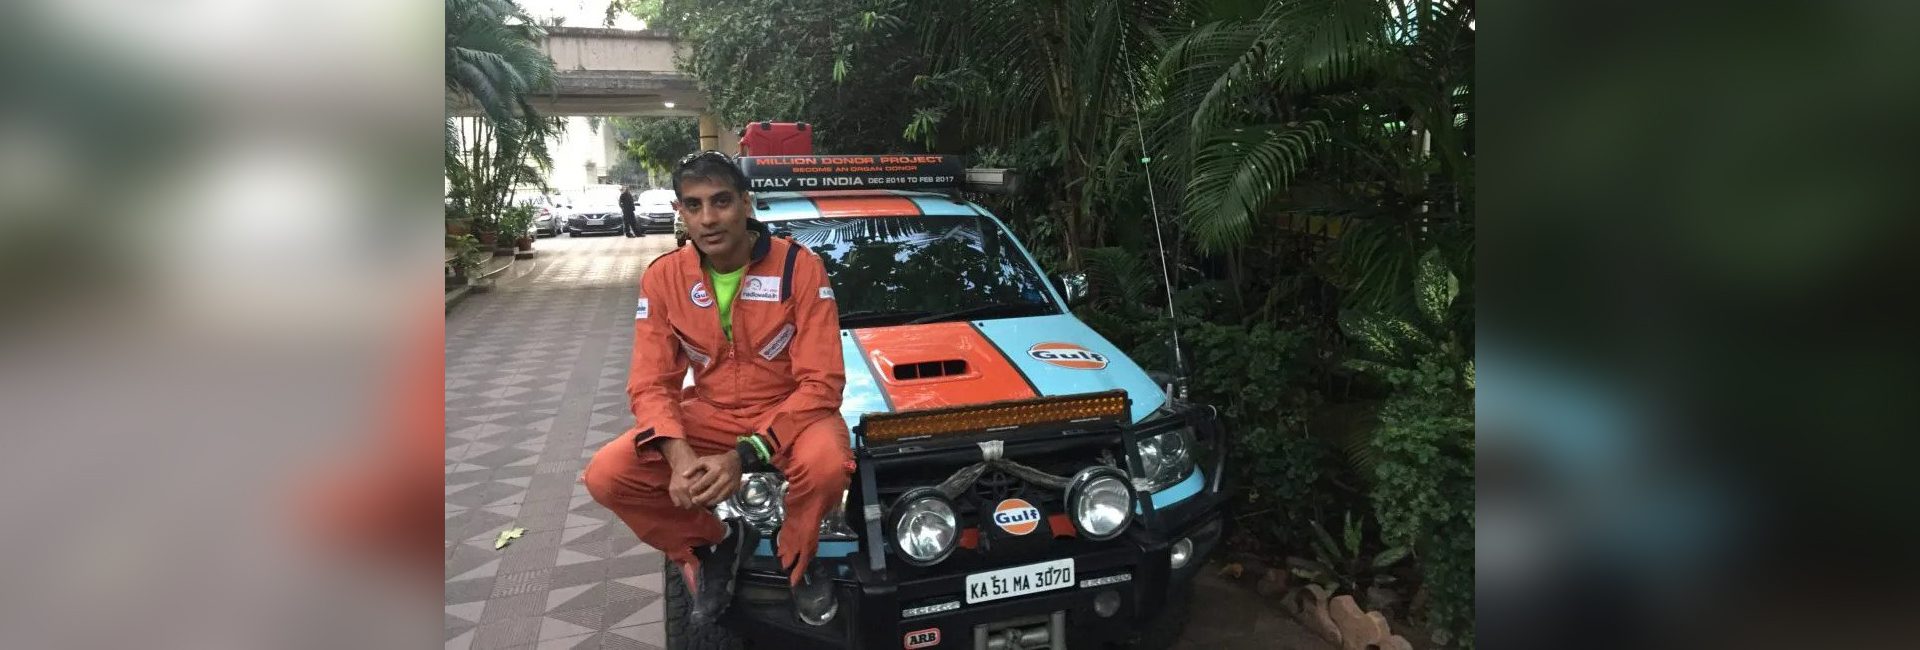 목적을 가진 세계 여행: Anil Srivatsa는 장기 기증에 대한 인식을 높이고 있습니다.